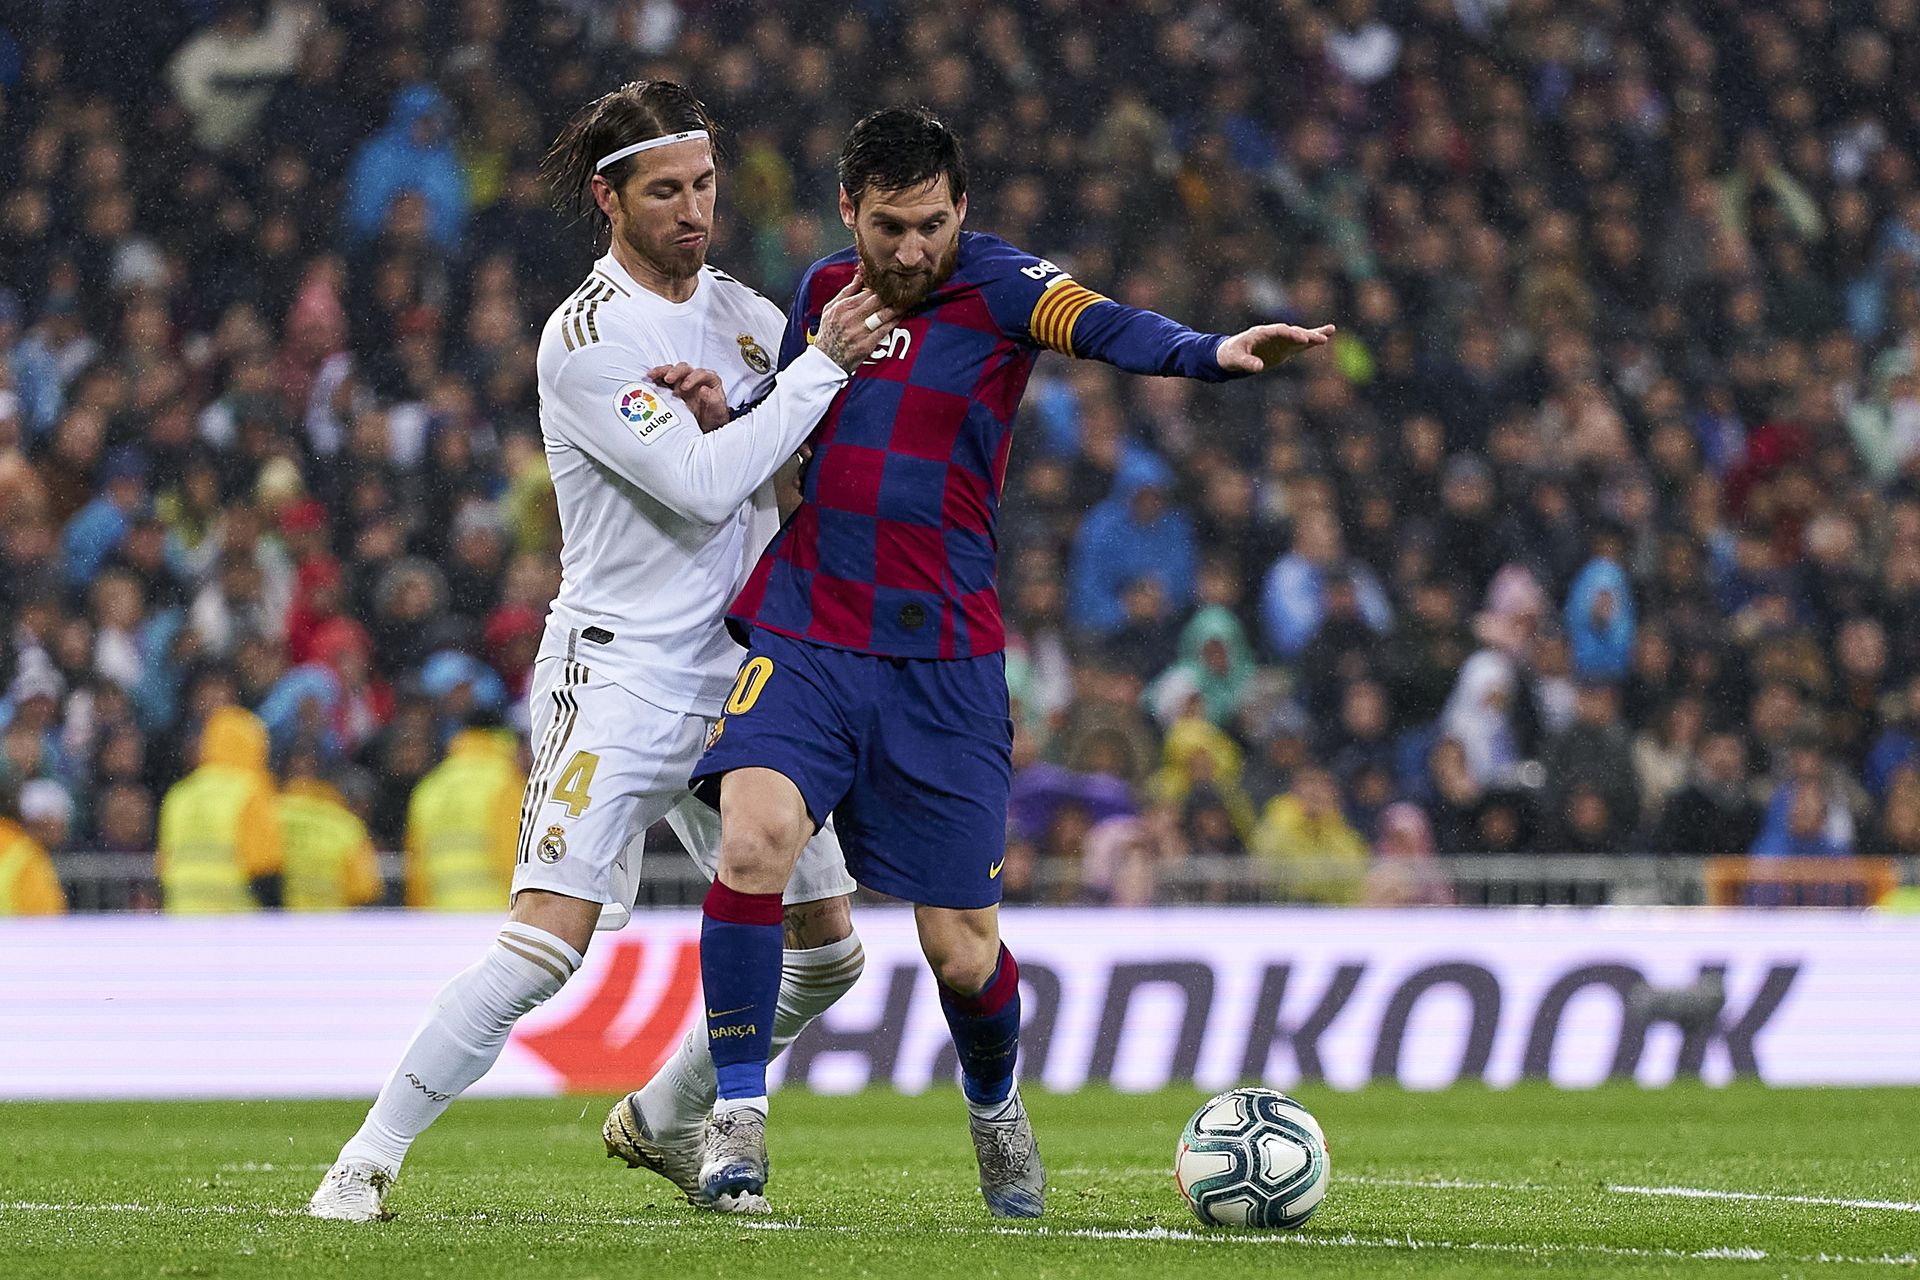 Az argentin zseni (jobbra) a Barcelona játékosaként nagy csatákat vívott a realos Sergio Ramosszal, ám már mindketten Párizsban futballoznak / Fotó: Gettyimages